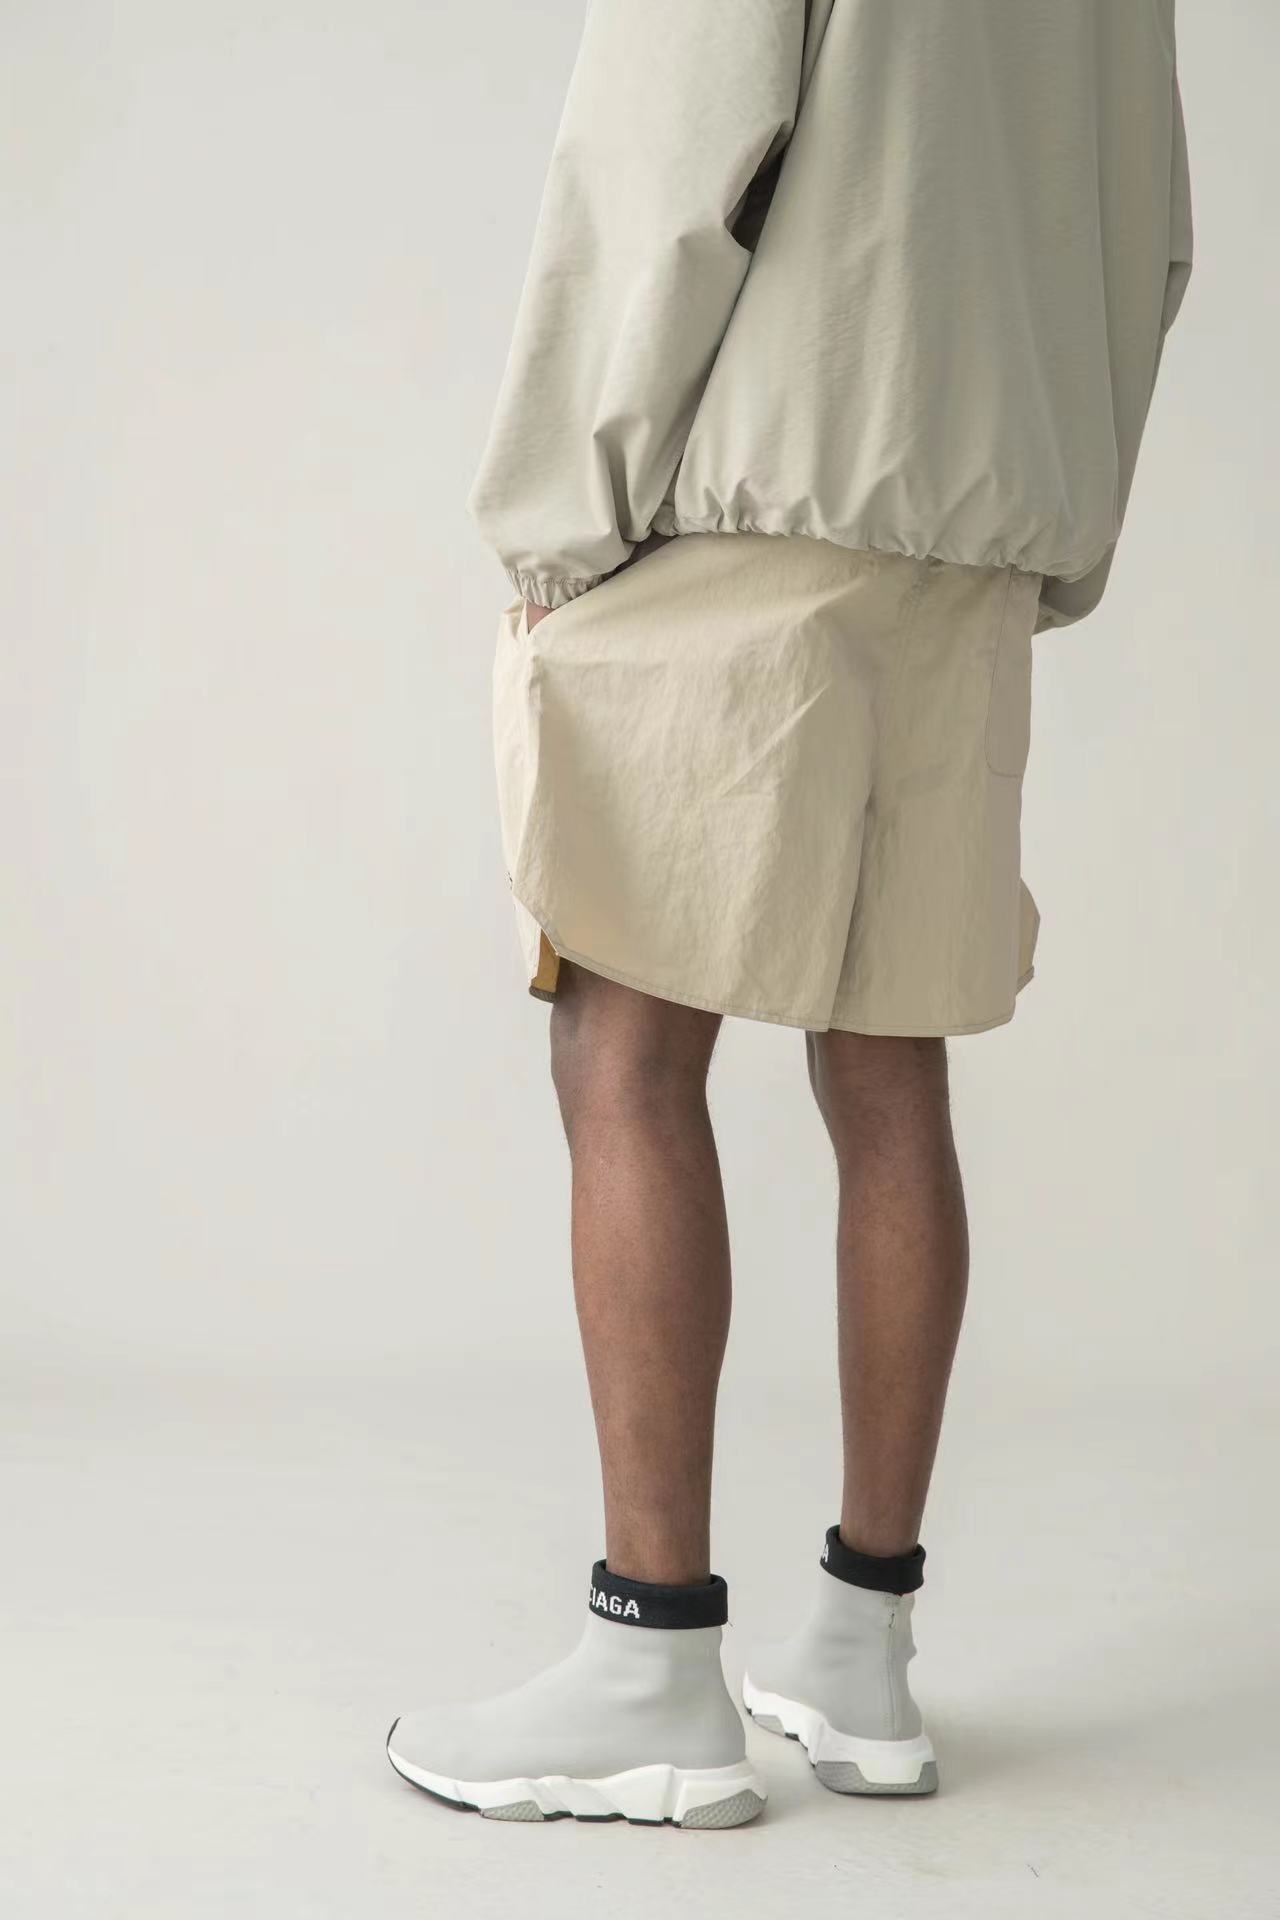 Мужские рефлексивные шорты дизайнерские рефлексивные тканые печатные шорты нейлоновые повседневные спортивные брюки Capris Fashion Solid Color Sports Pare Hip Hop Streetwear